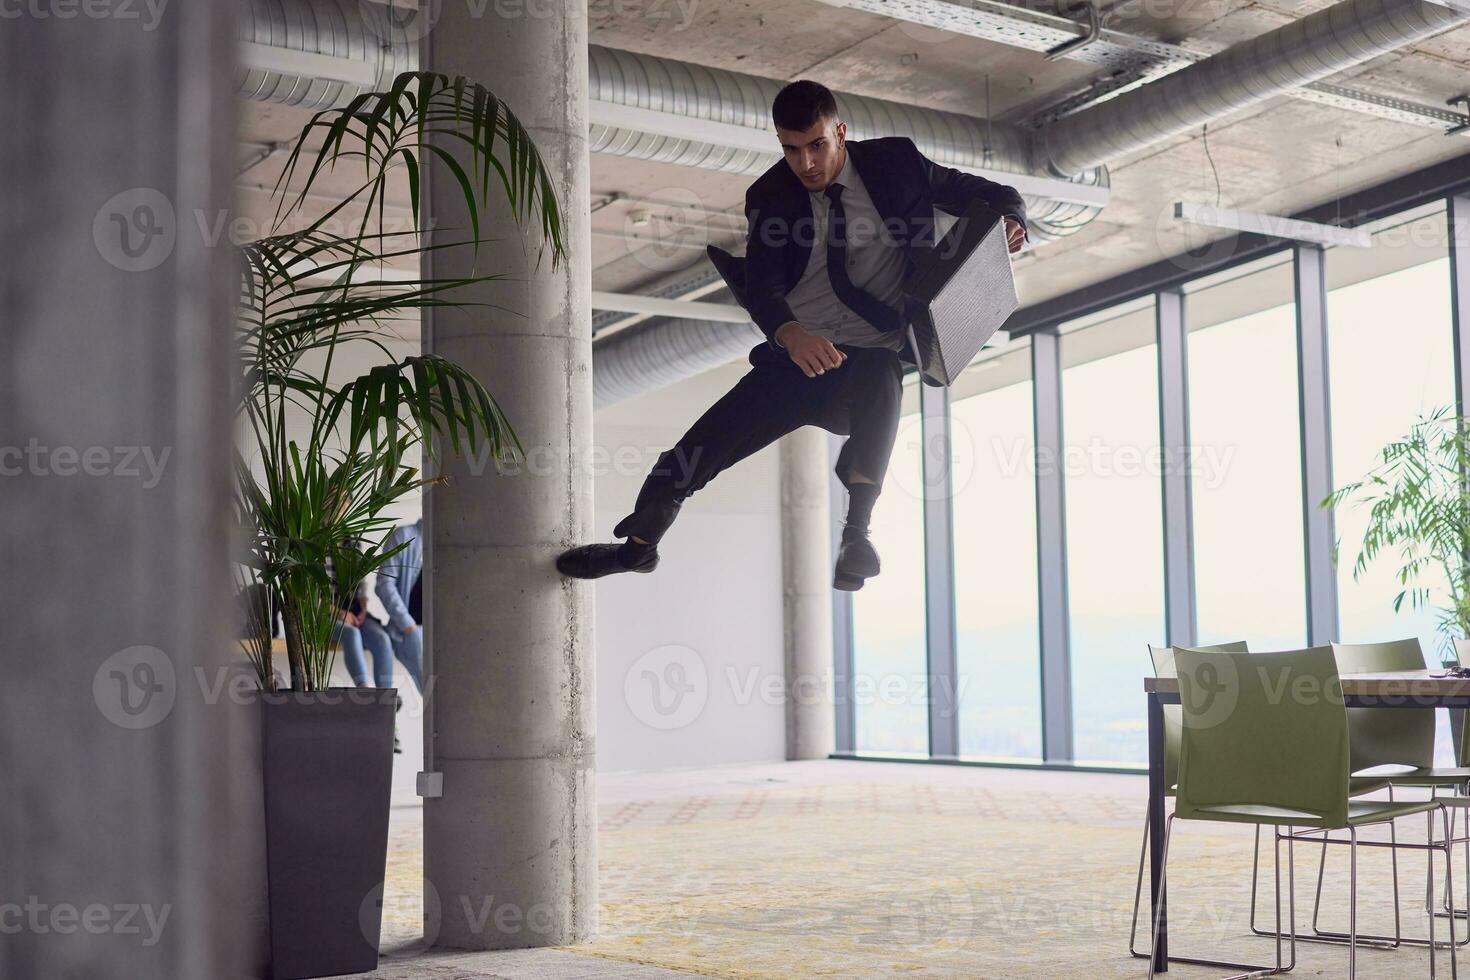 in de modern kantoor, een zakenman met een aktentas boeit iedereen net zo hij presteert spannend antenne acrobatiek, tarten zwaartekracht met zijn gedurfd sprongen en presentatie van zijn behendigheid met adembenemend showmanschap. foto